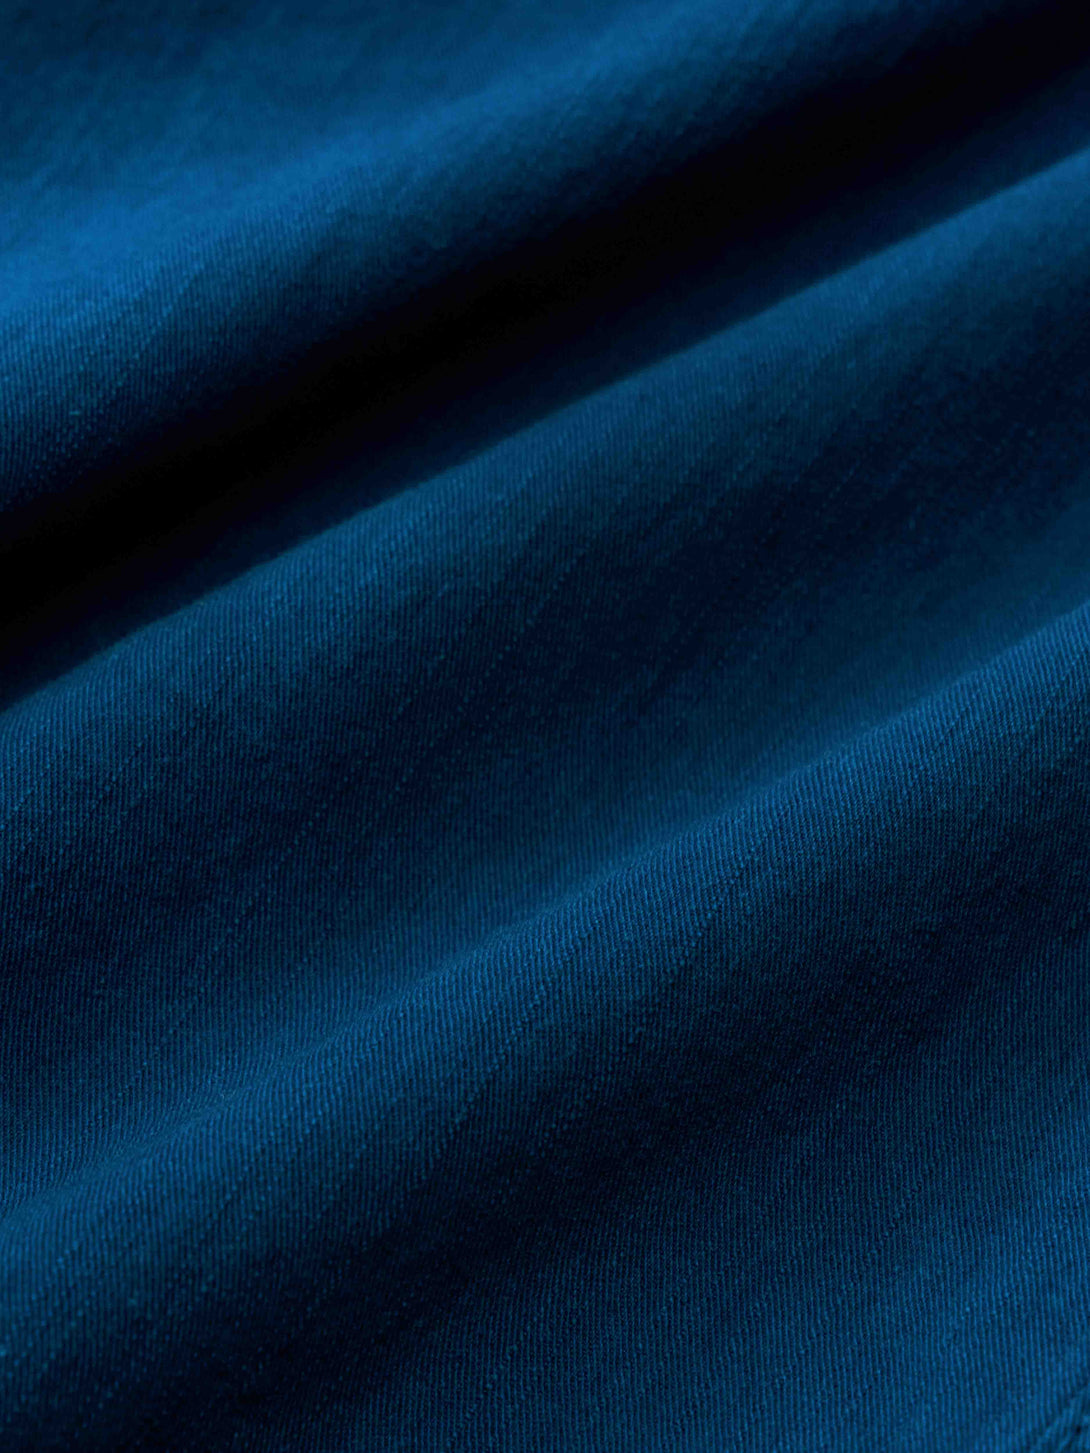 藍染めイージーパンツのウエスト部分、ゴム内蔵とドローコードが特徴